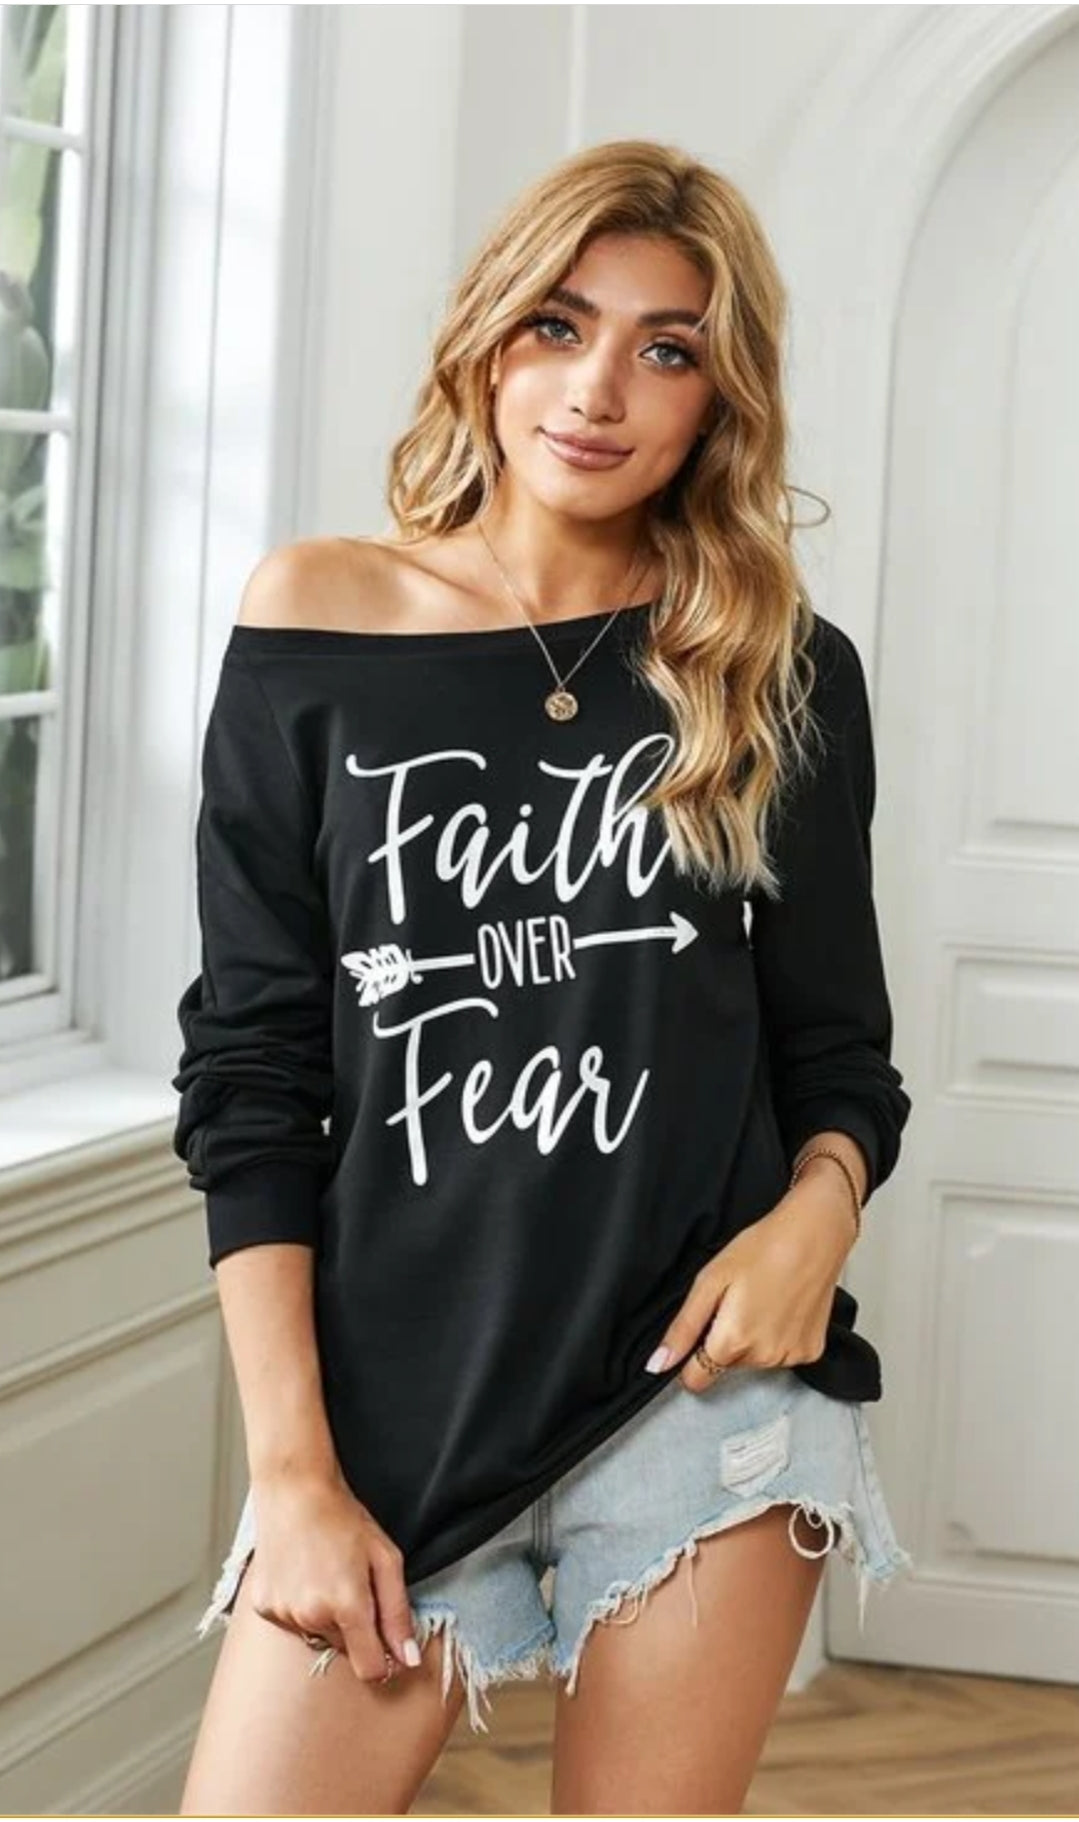 Faith over fear pullover long sleeve shirt